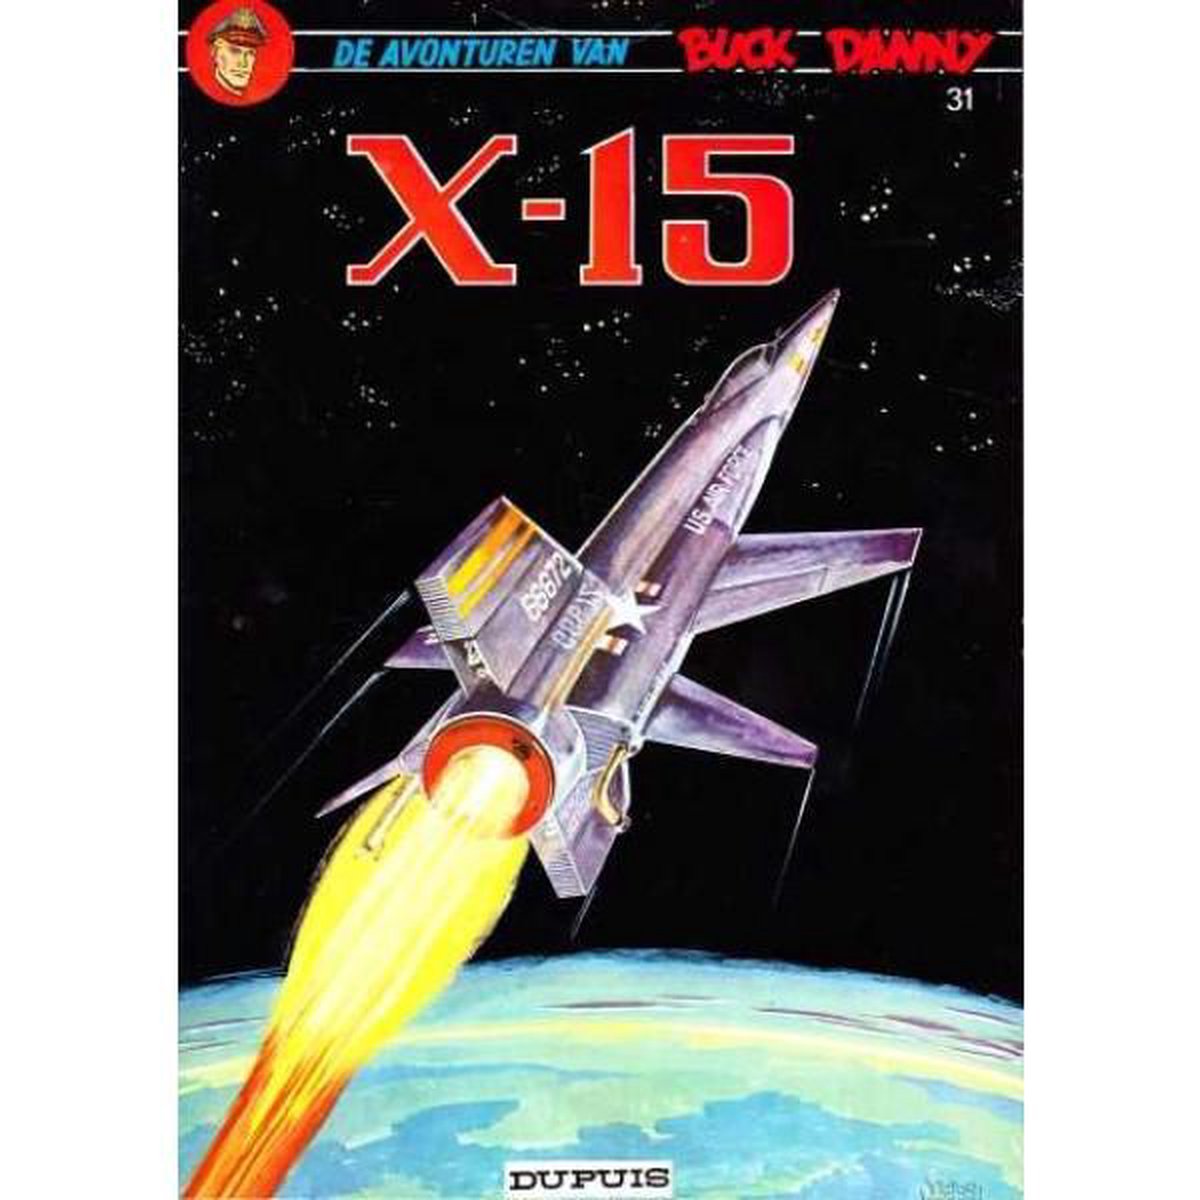 X-15 / Buck Danny / 31